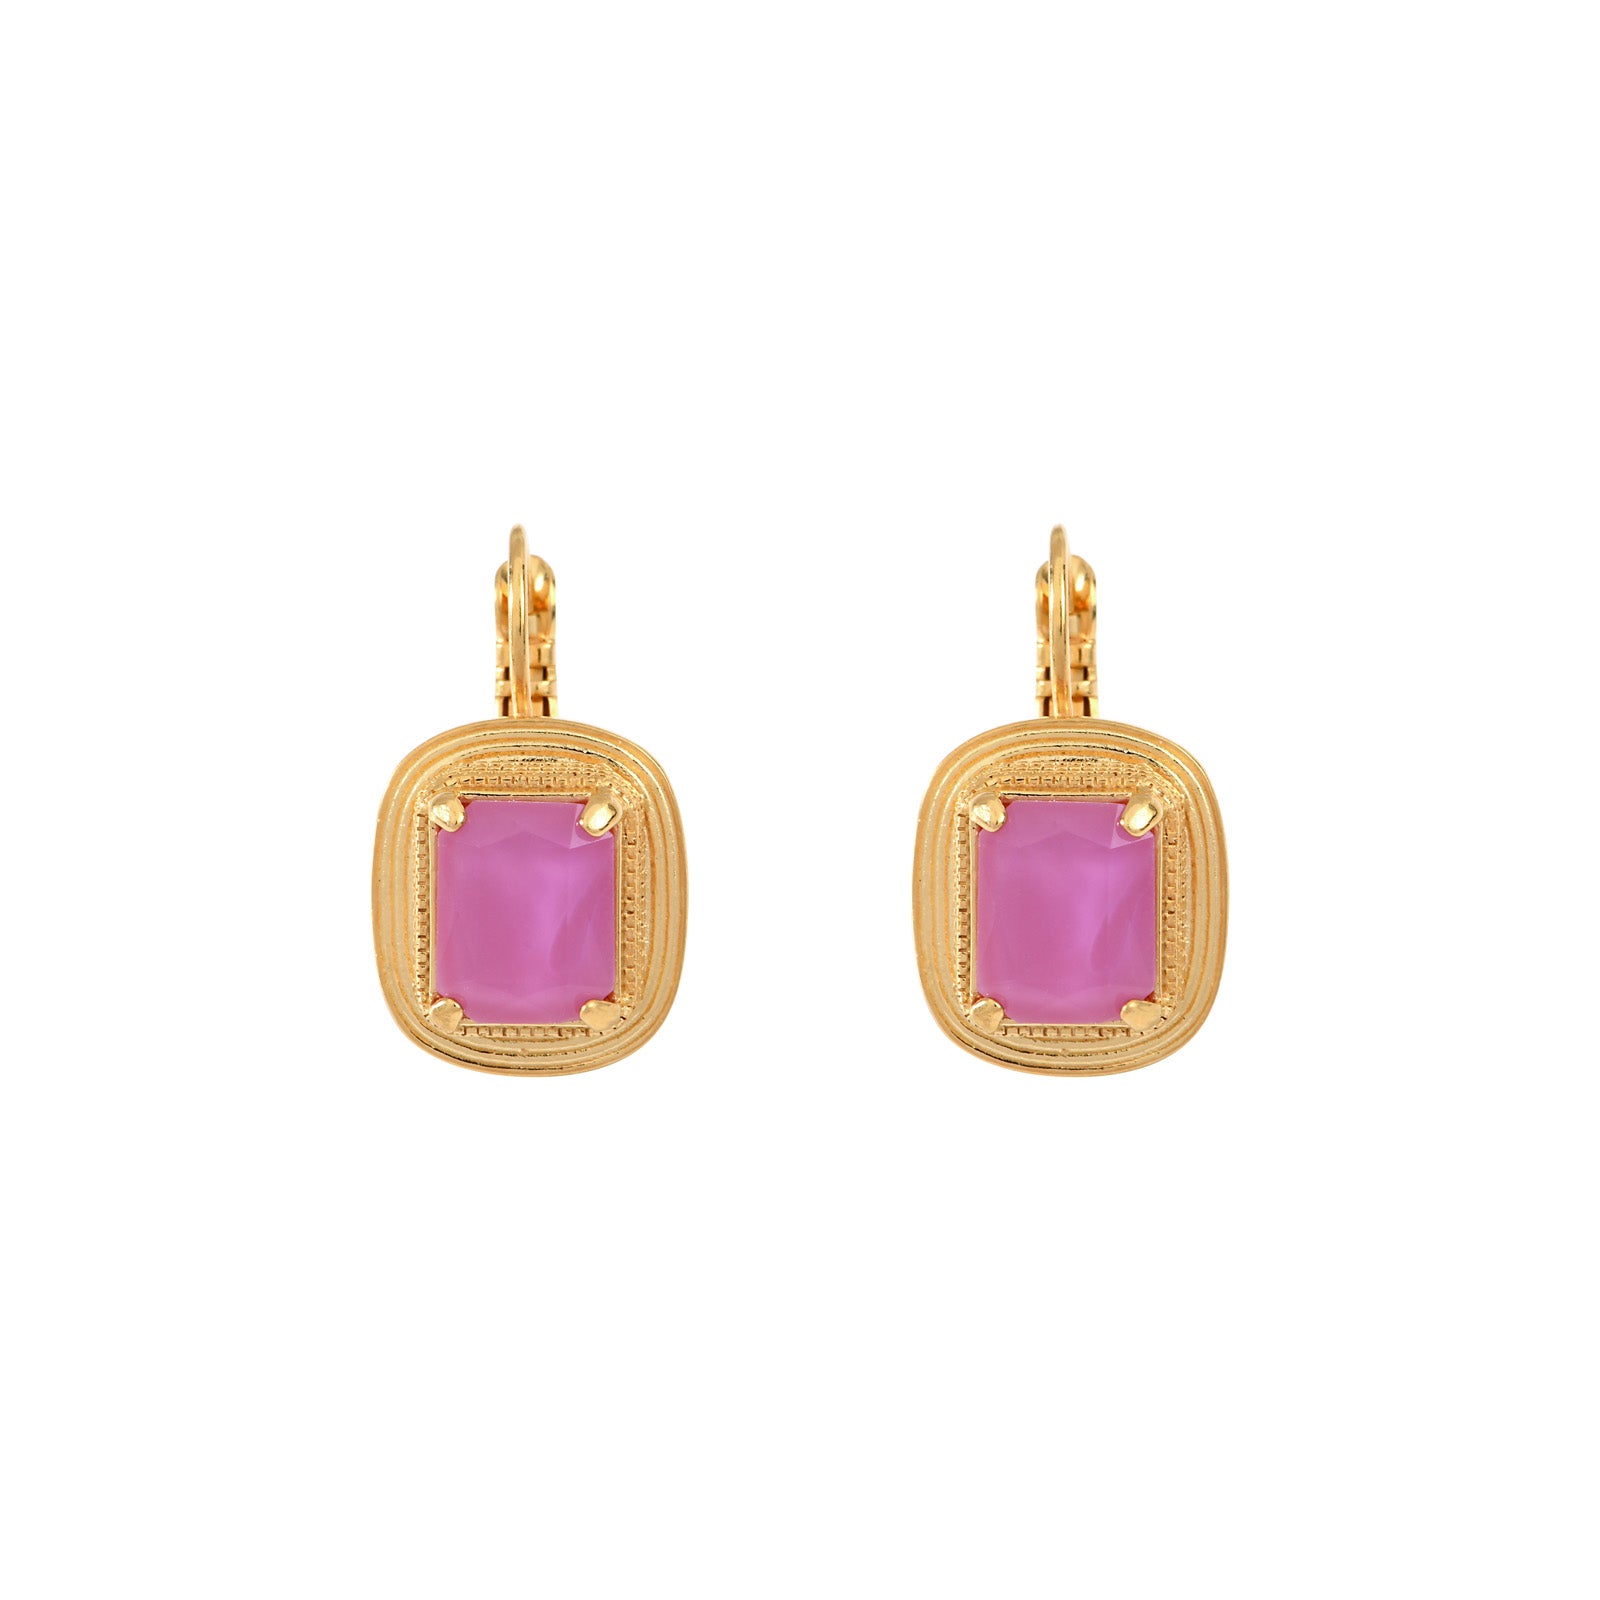 Art Deco style earrings in pink